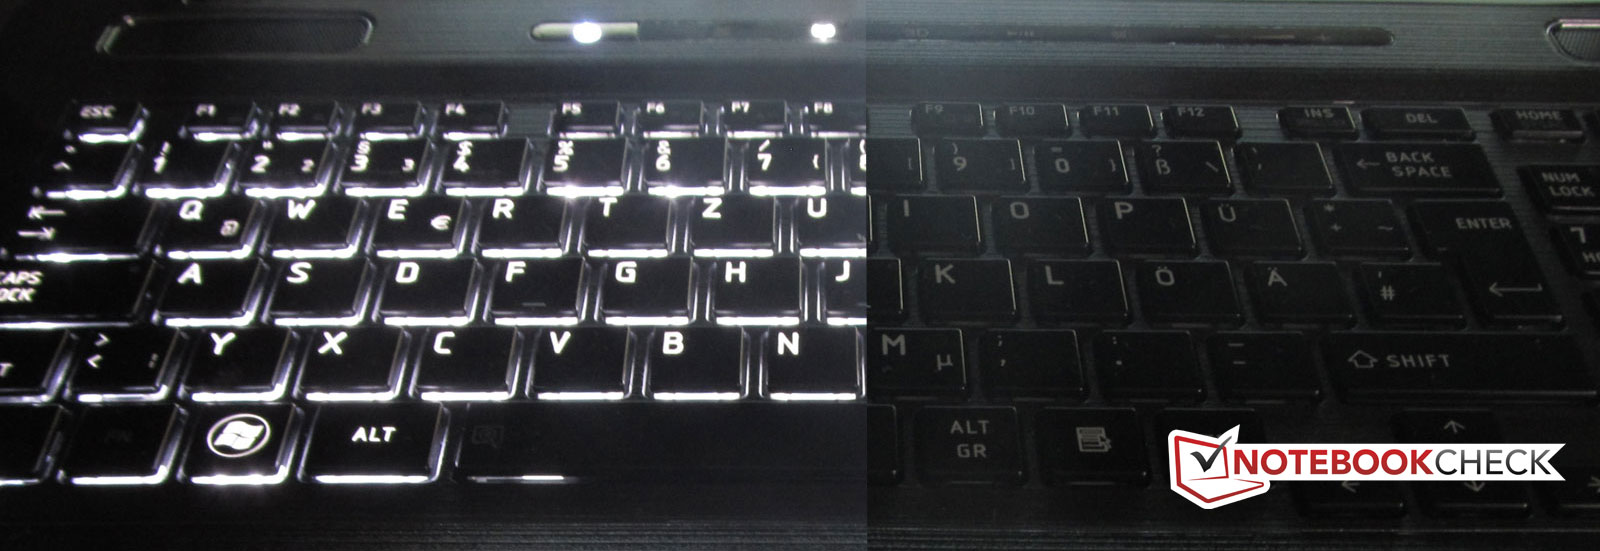 Подсветка клавиатуры ноутбука выключается. Toshiba Satellite p775 клавиатура. Клавиатура Toshiba Satellite p775 с подсветкой. Toshiba a300 накладка клавиатуры. Toshiba подсветка клавиатуры.